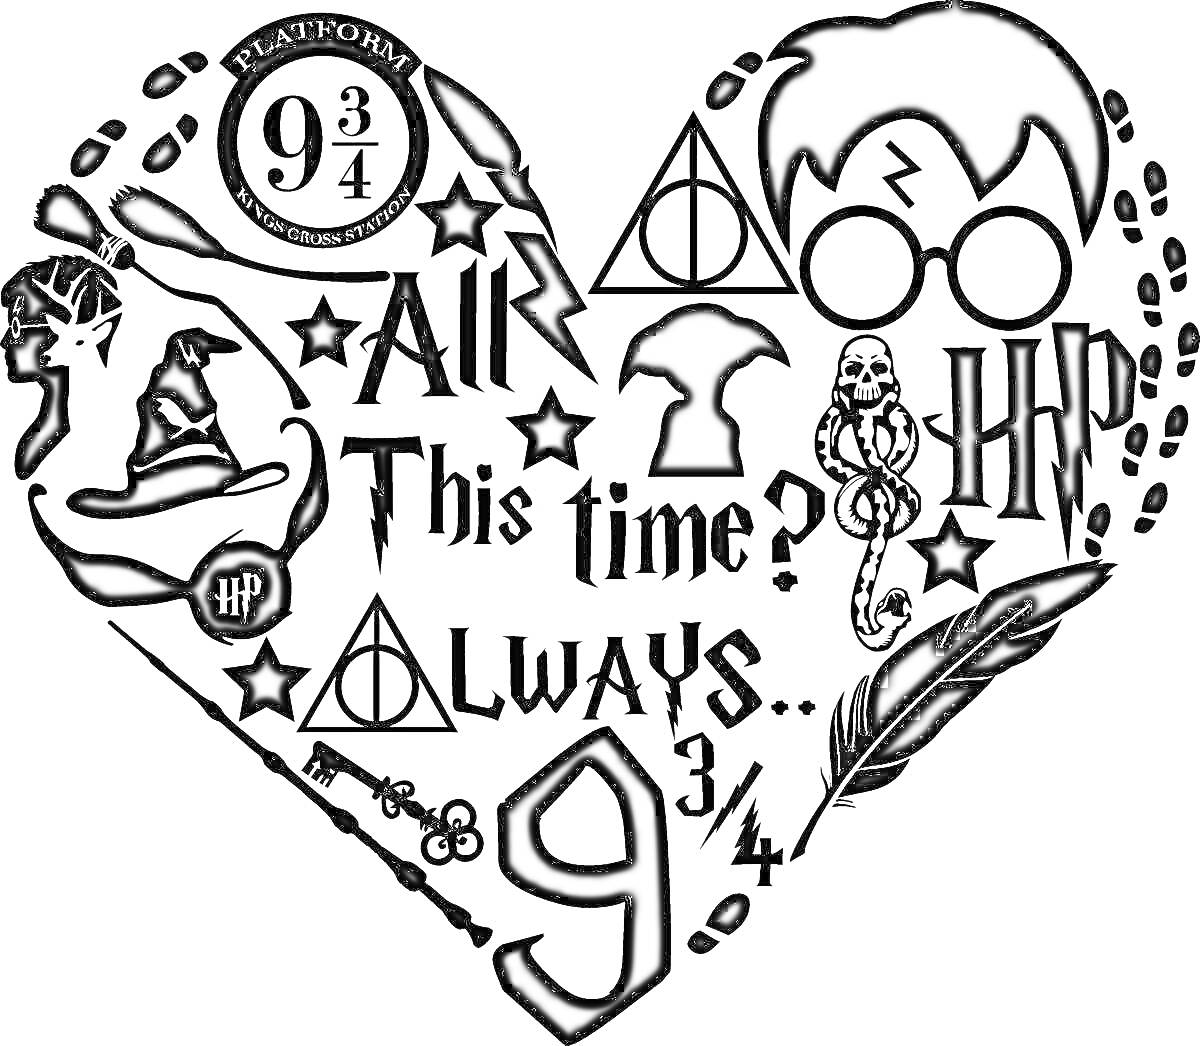 Раскраска сердце с символами школы чародейства и волшебства, включая платформу 9 3/4, очки, усы и шрам в виде молнии, надписи 